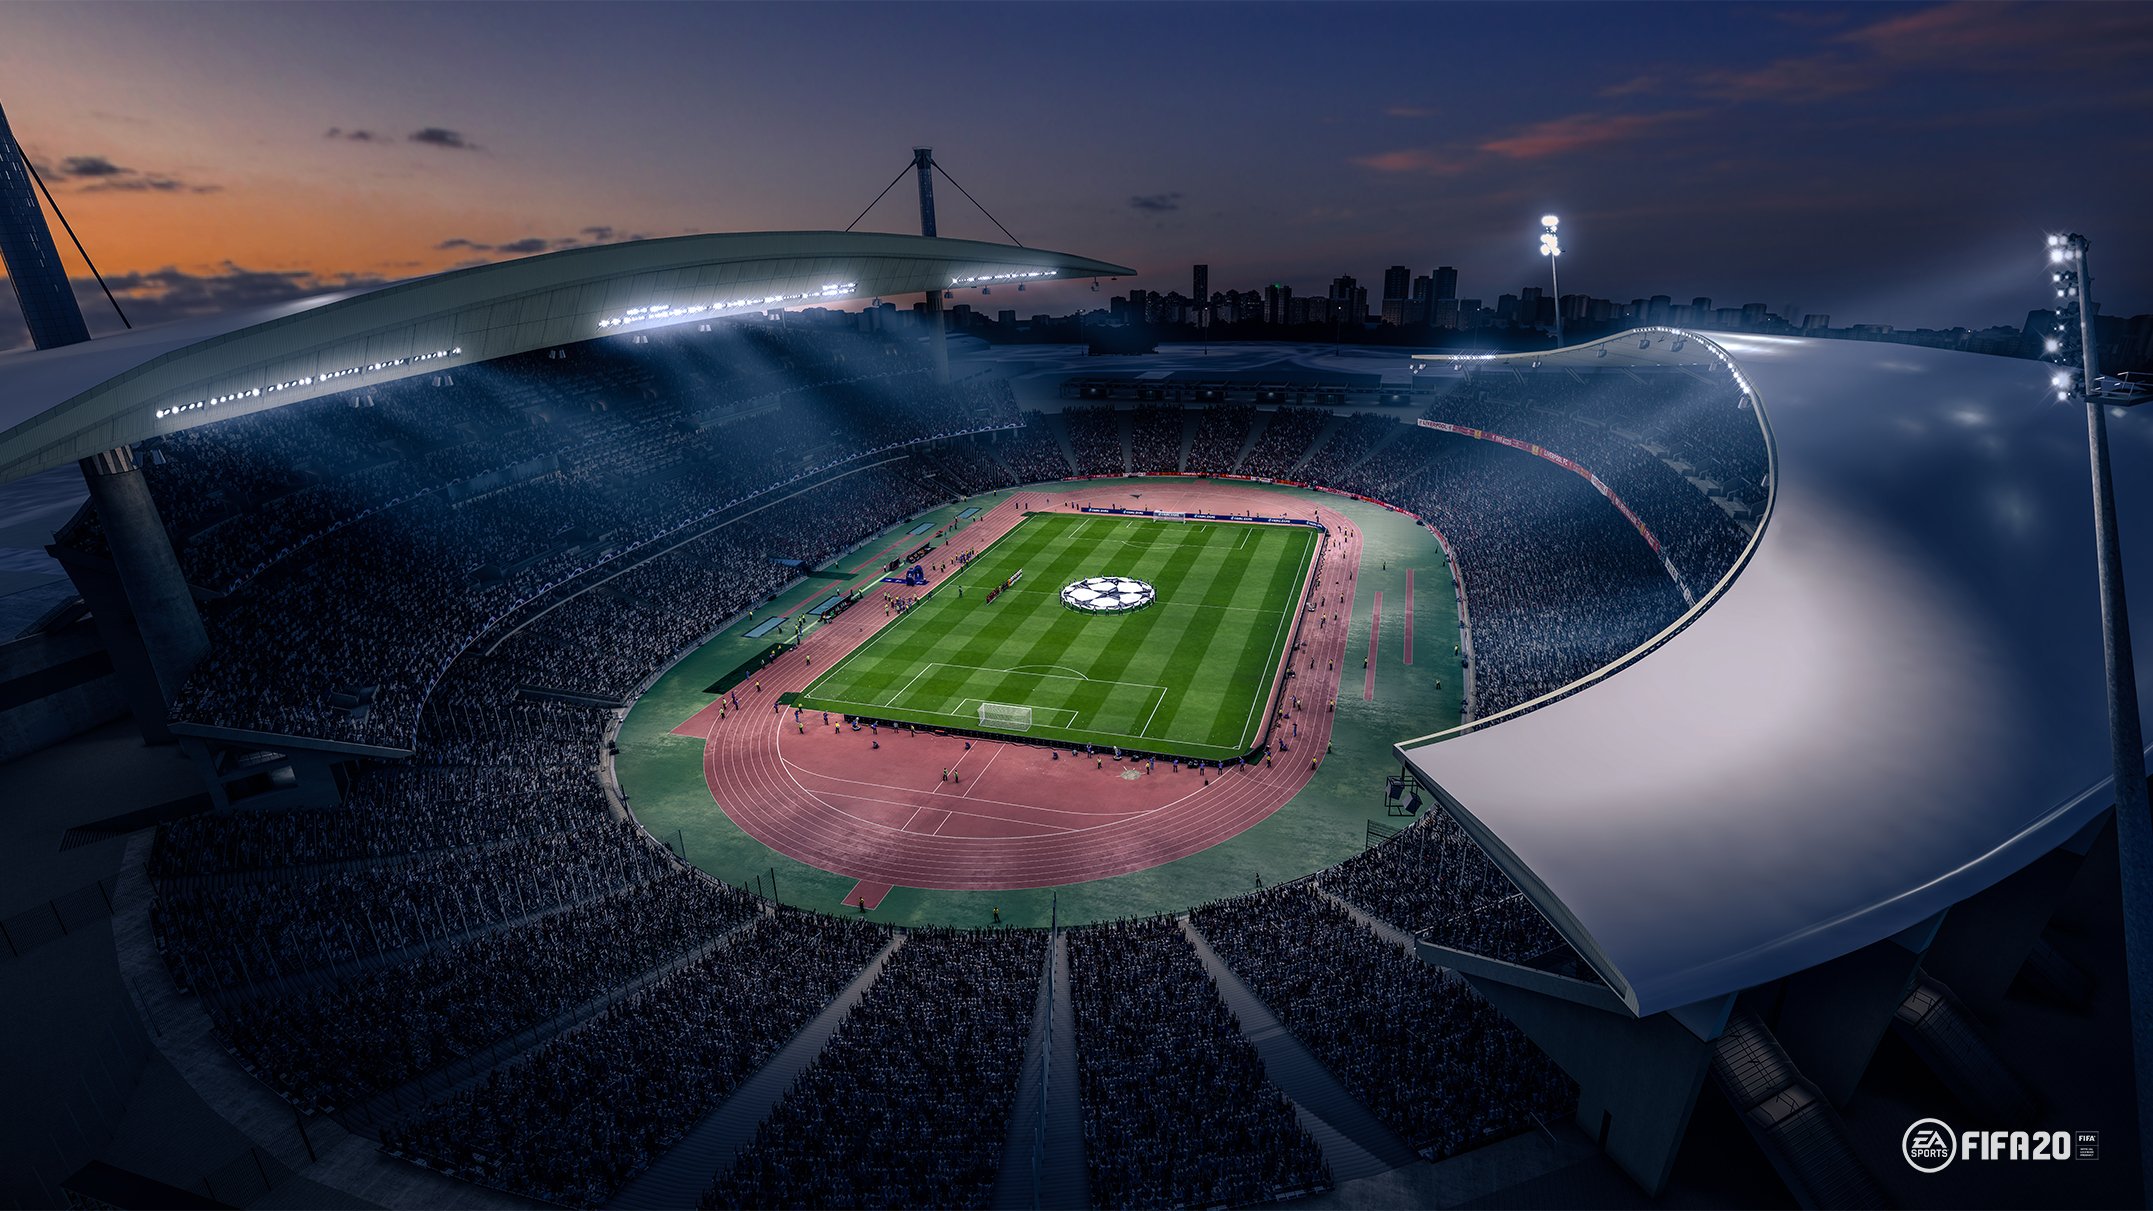 ataturk olympic stadium 2020